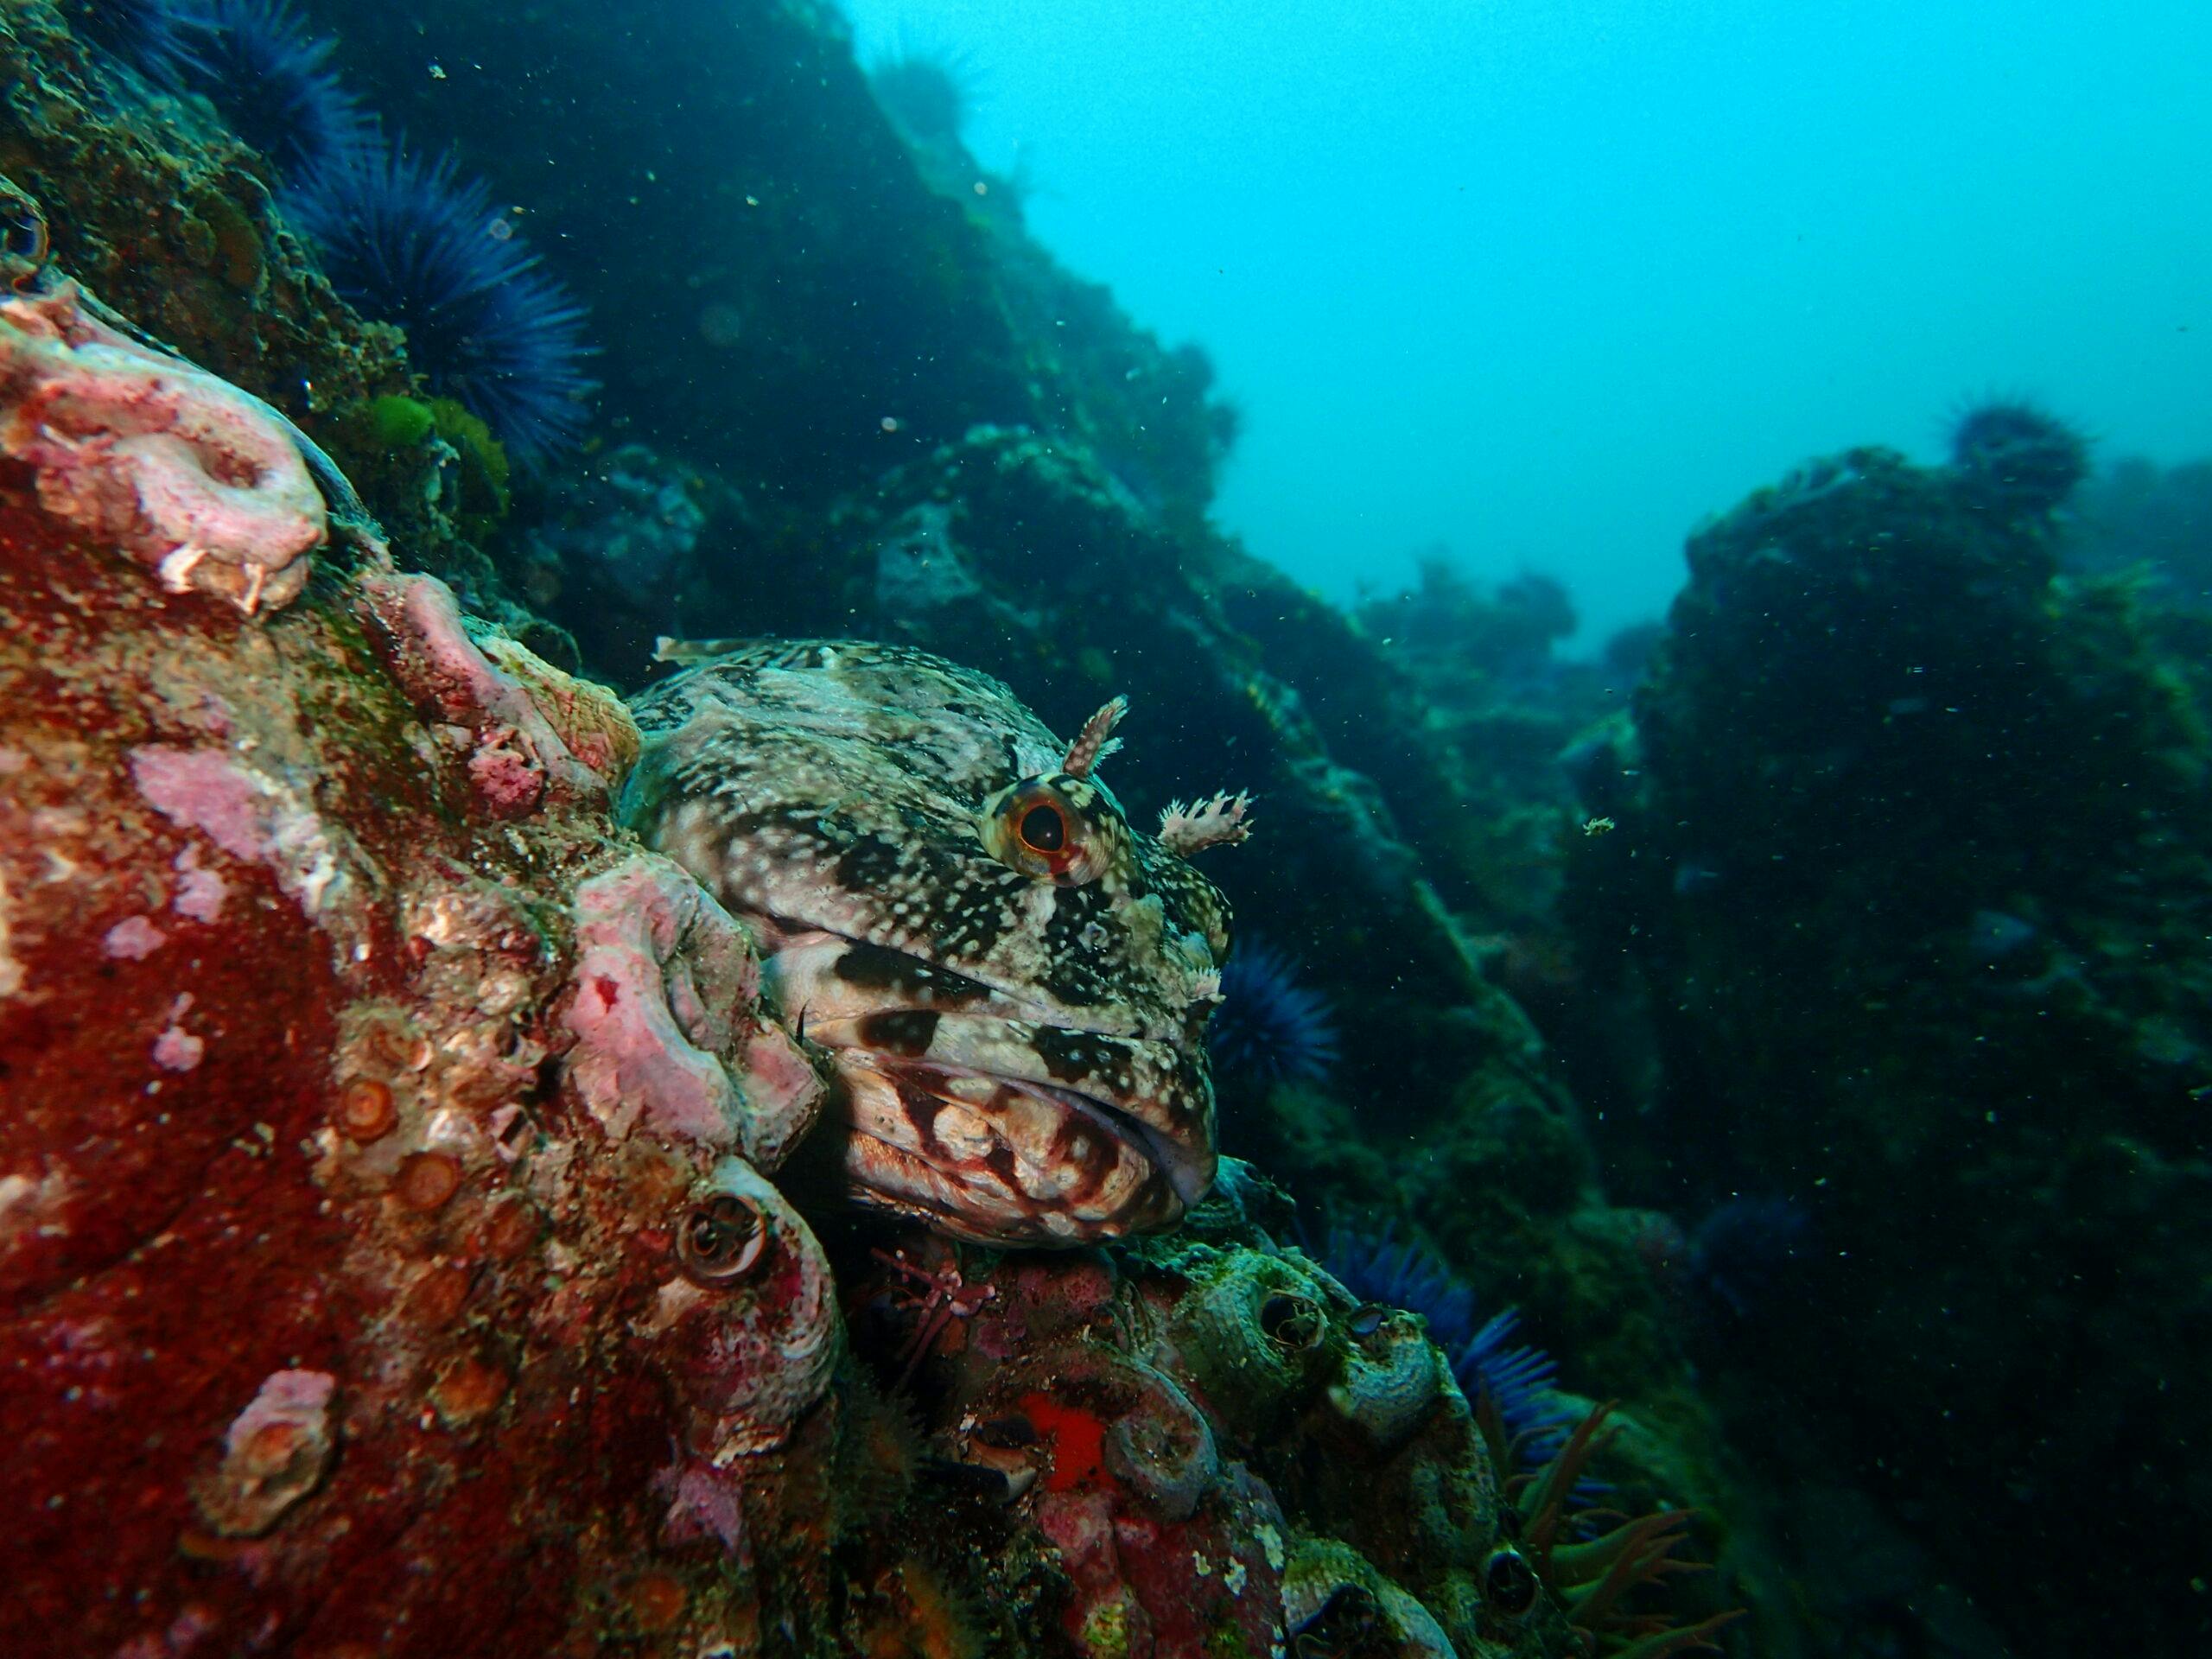 Diverse ecosystem underseas